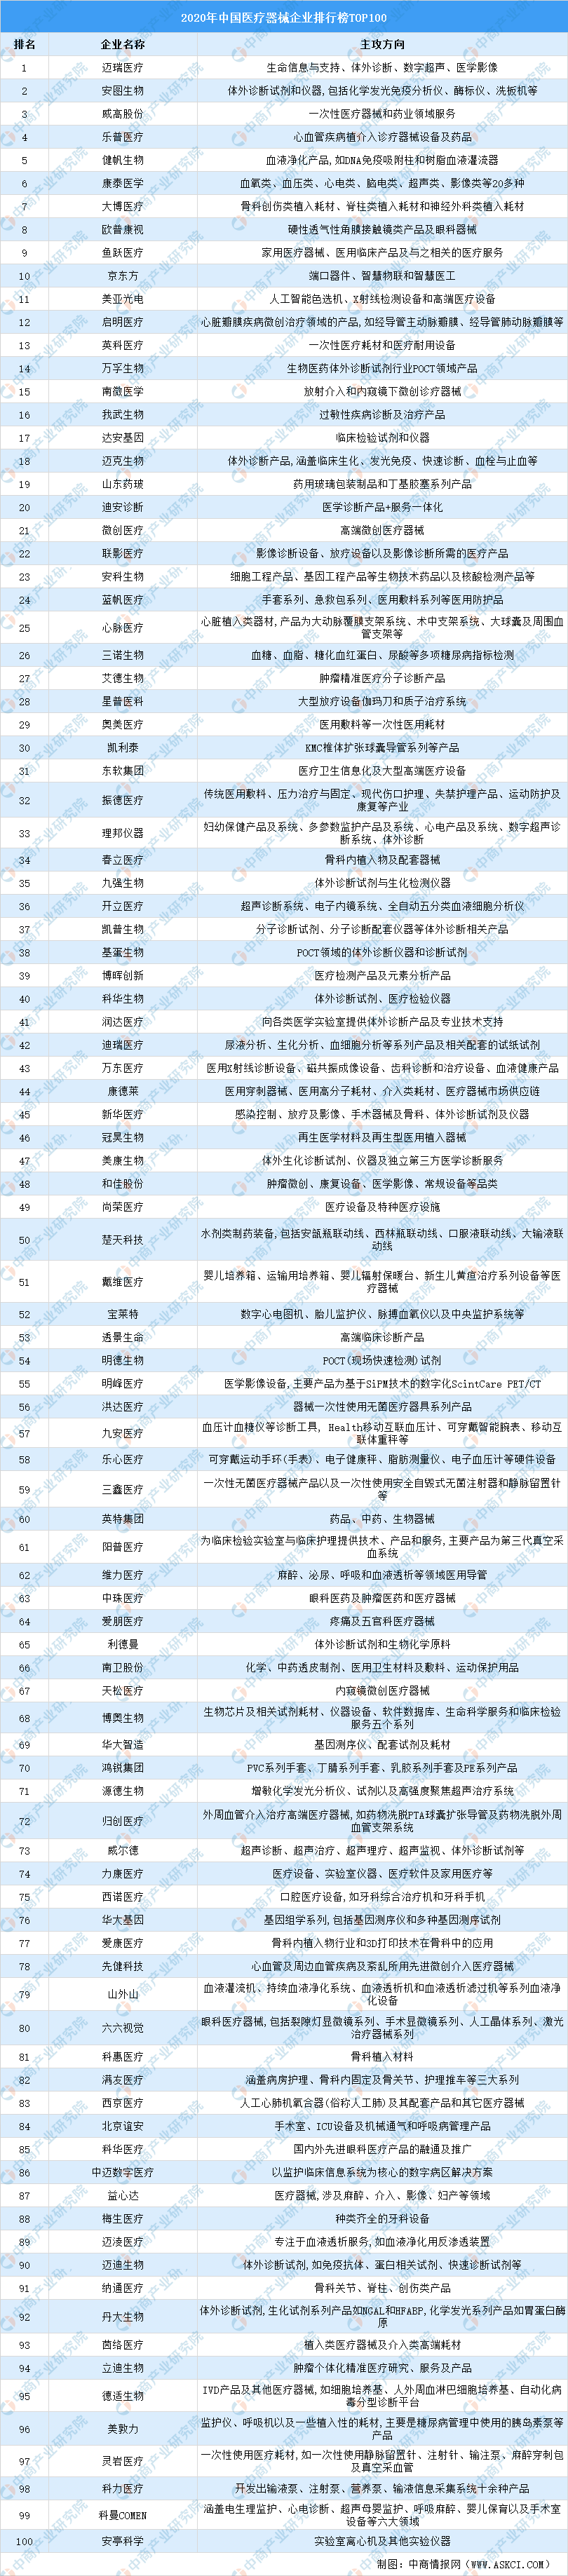 医疗器械公司排行_中国VS世界,医疗器械行业排名状况一览!